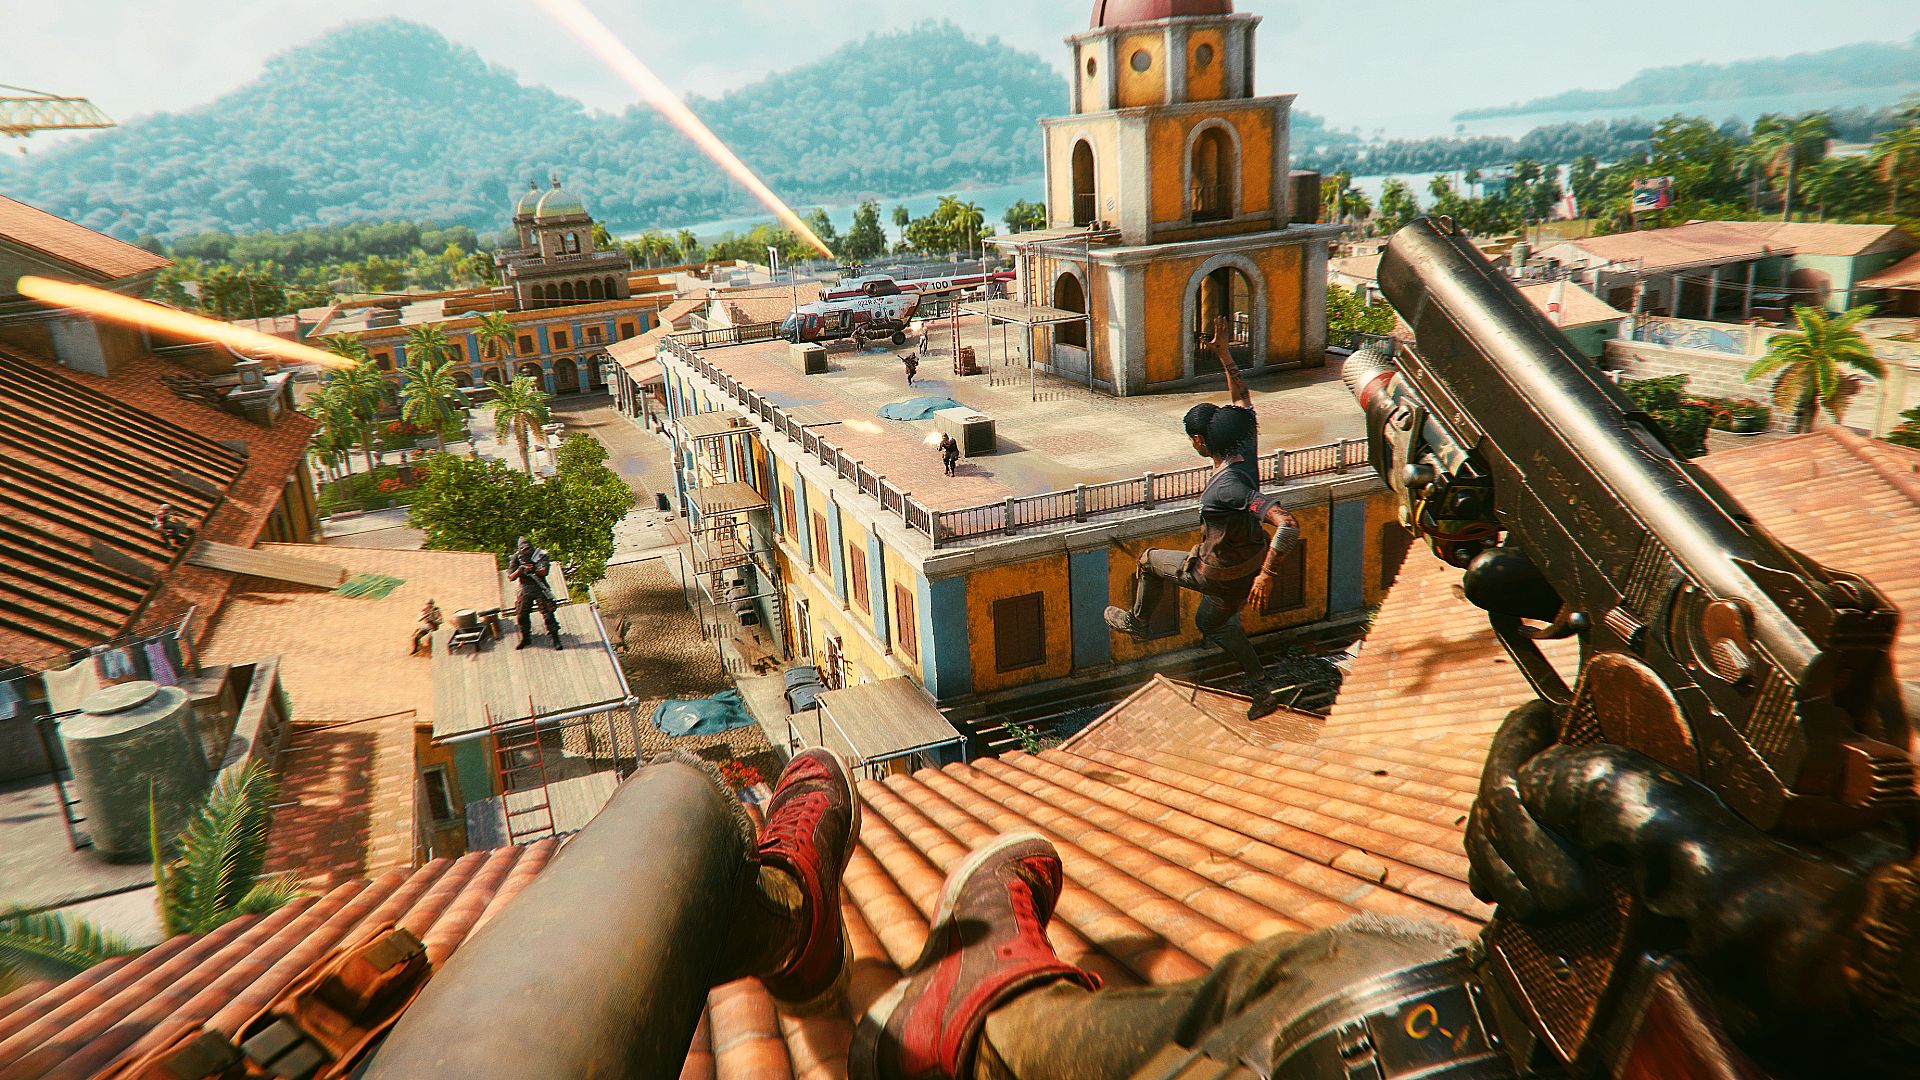 Far Cry 6 on Steam Deck 